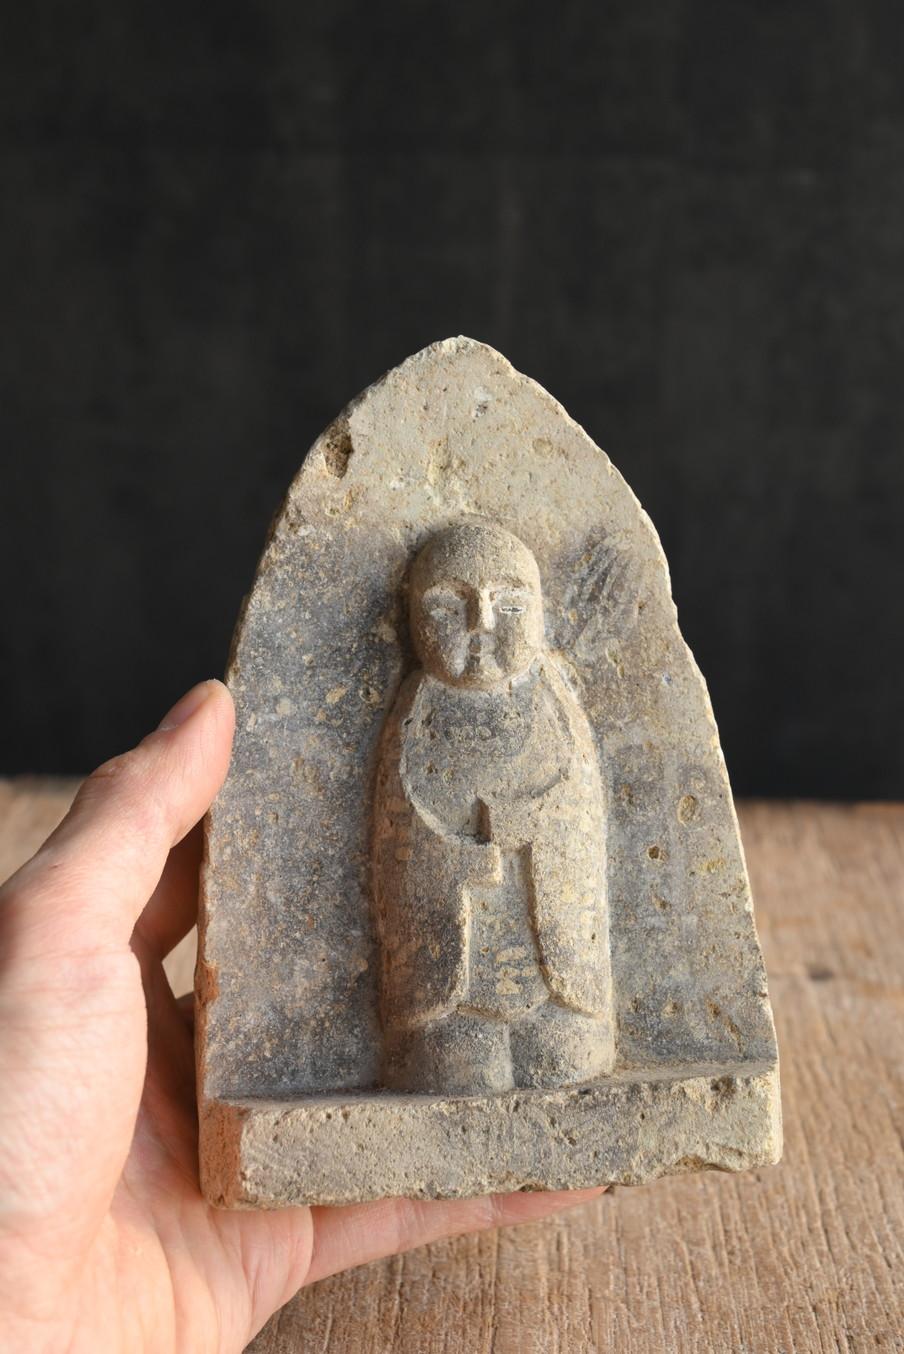 Dies ist ein kleiner Steinbuddha aus der Edo-Zeit in Japan.

Seine Würde ist 